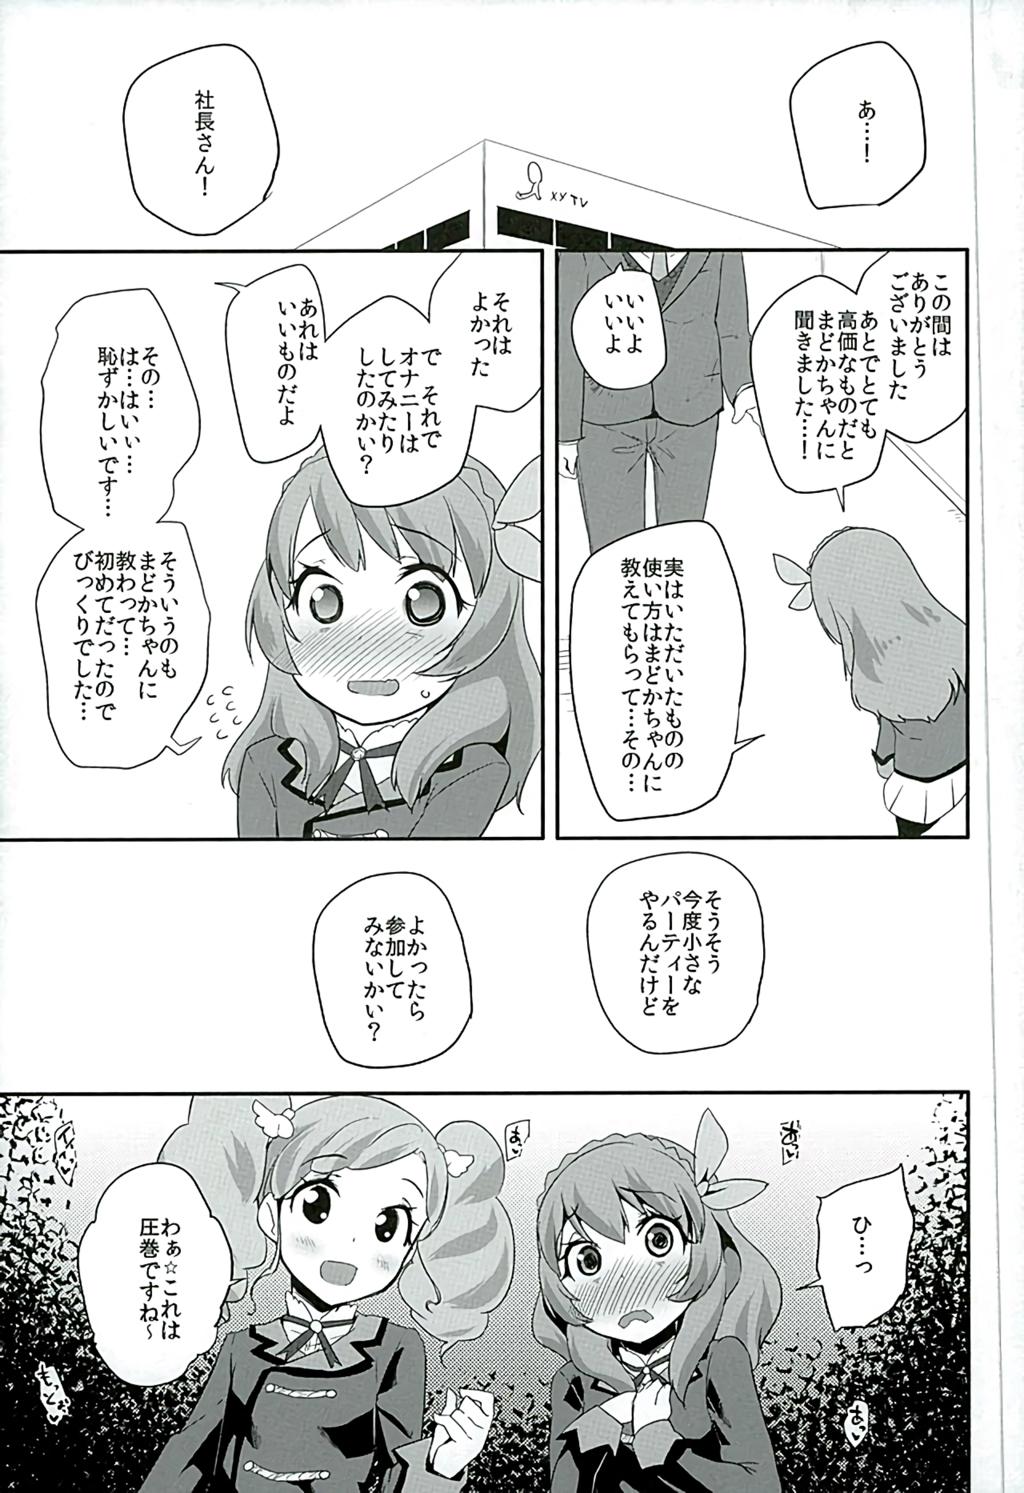 Gape Tri Tri Trips! - Aikatsu Kitchen - Page 8